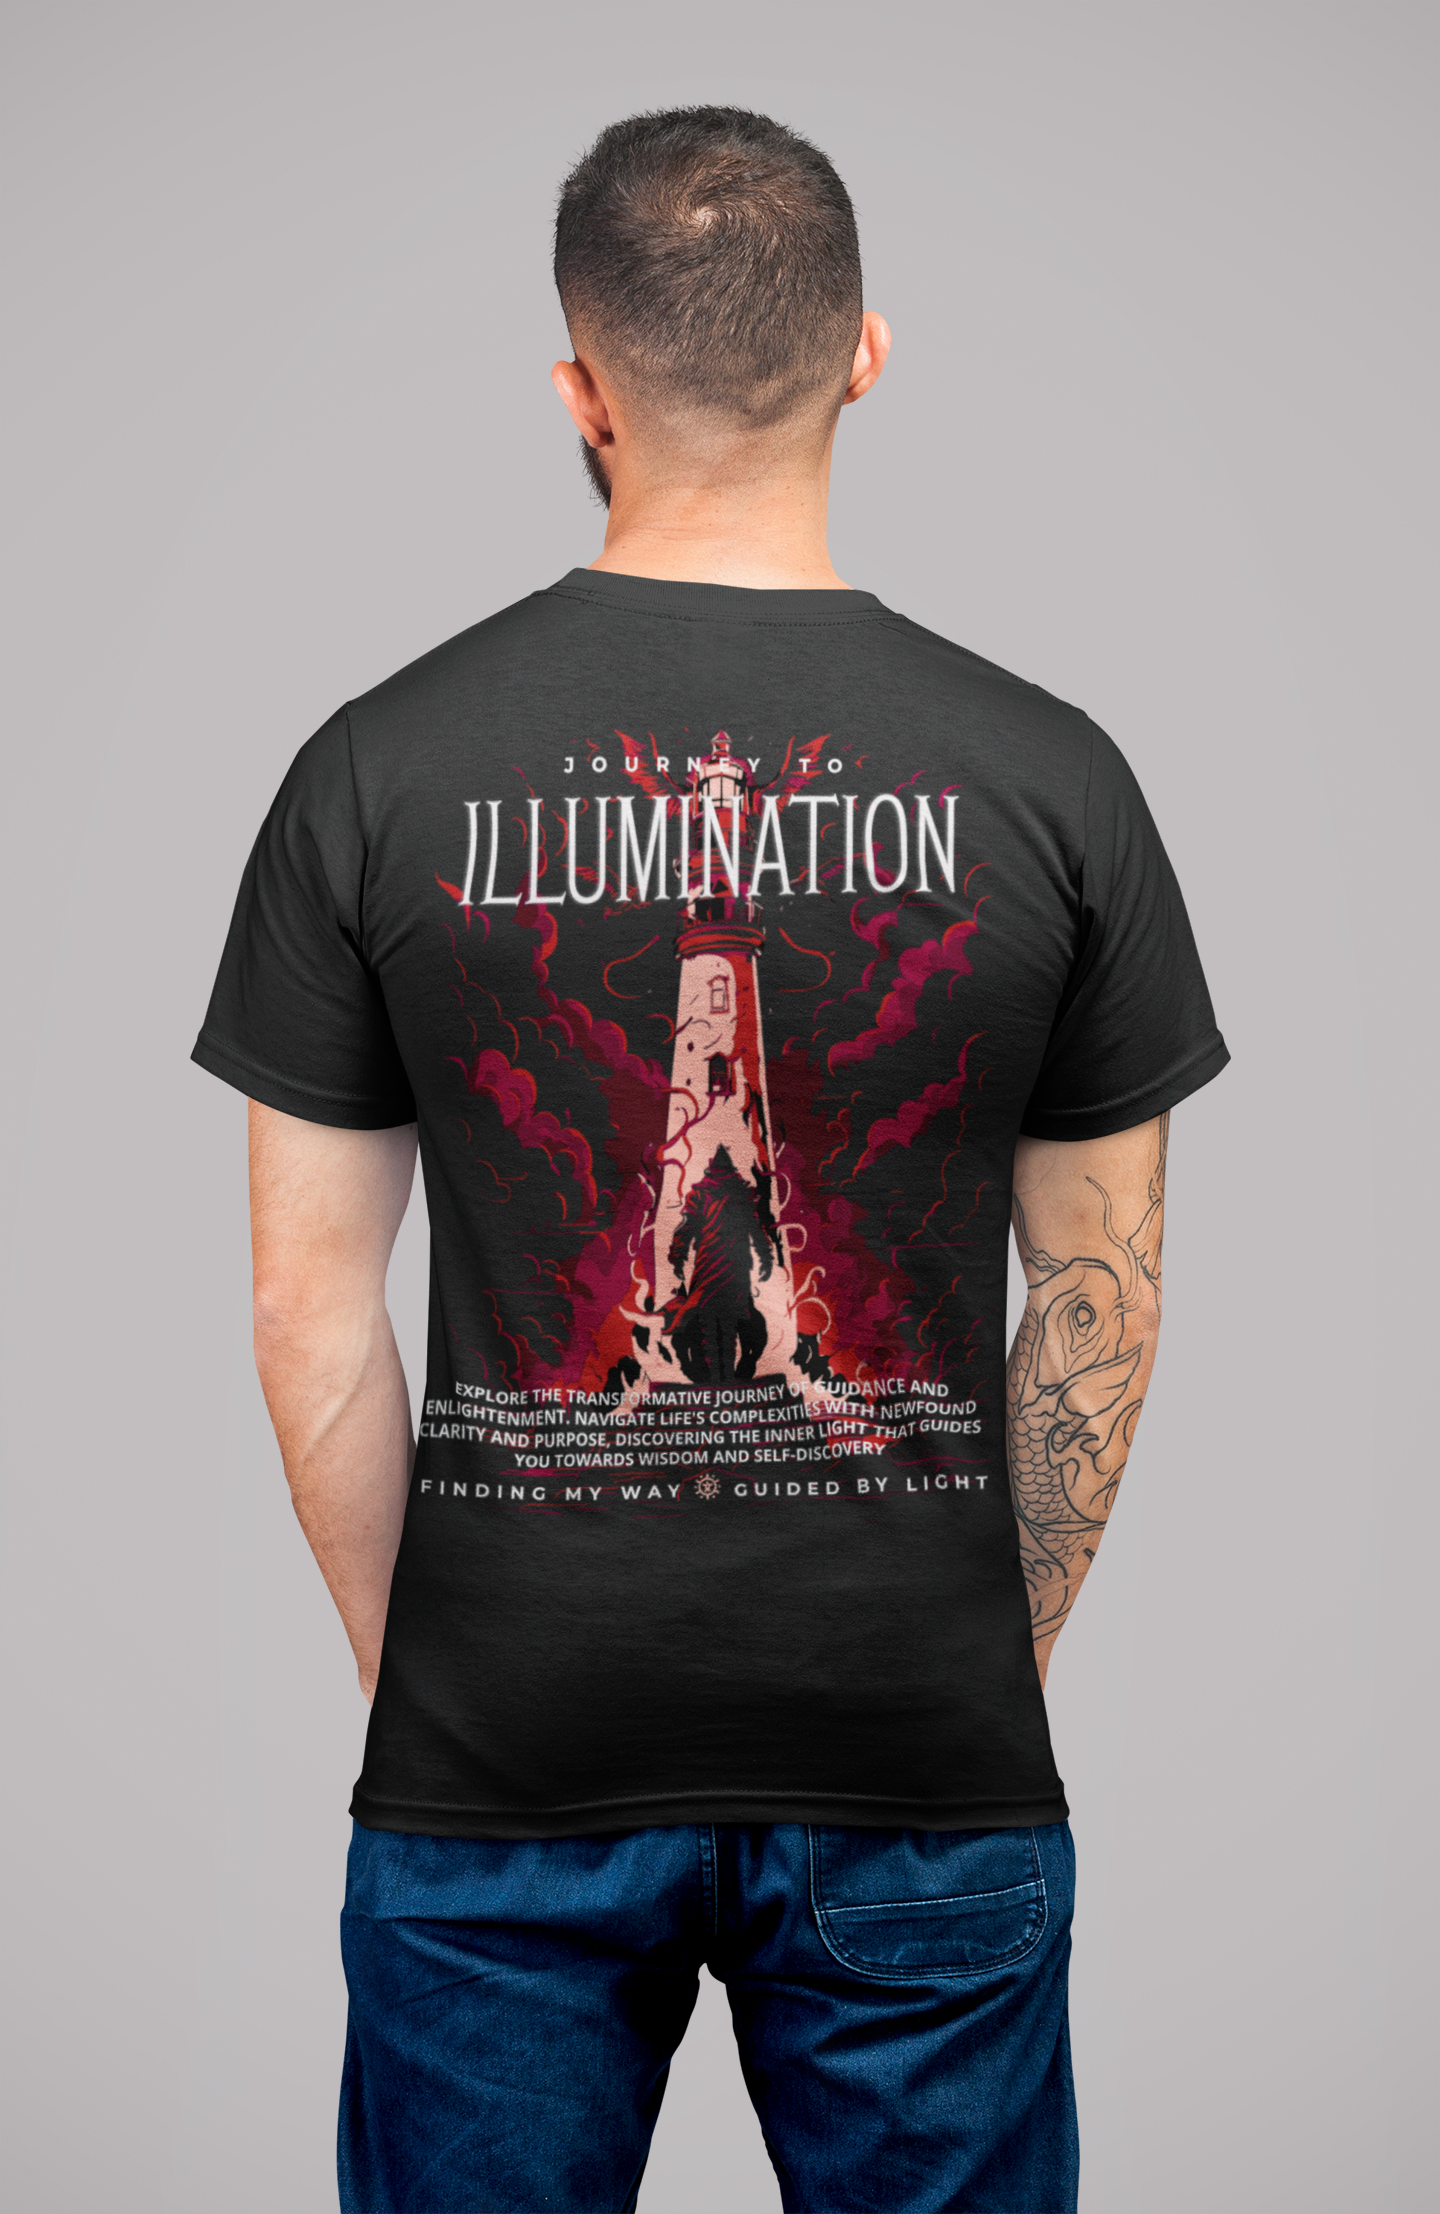 DanielEden Premium zwaar T-shirt voor heren 'Ilumination'